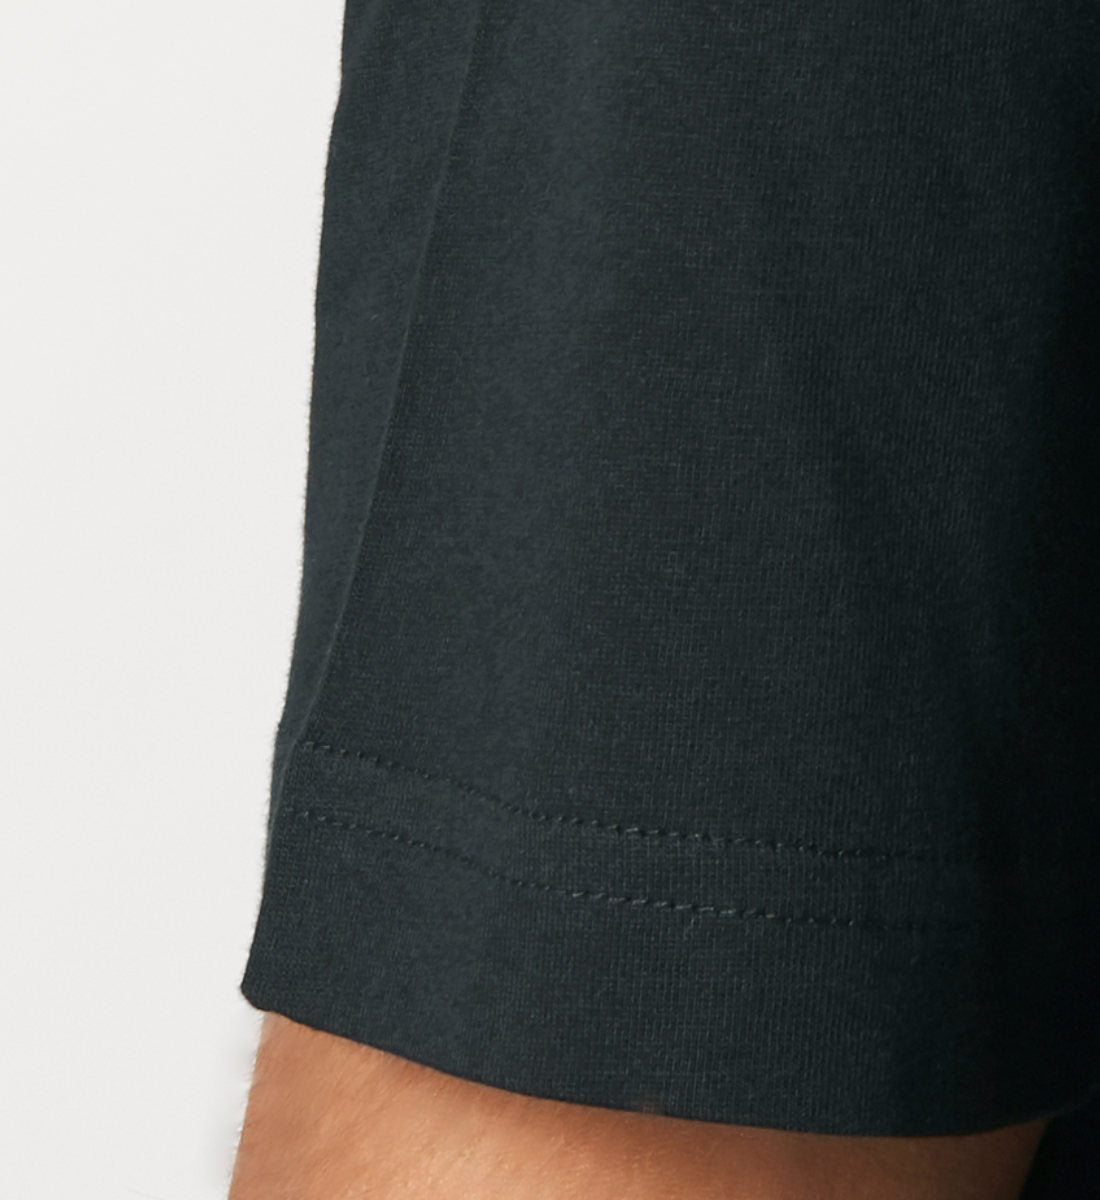 Schwarzes T-Shirt Unisex Relaxed Fit für Frauen und Männer bedruckt mit dem Design der Roger Rockawoo Kollektion Timesquare Time is square